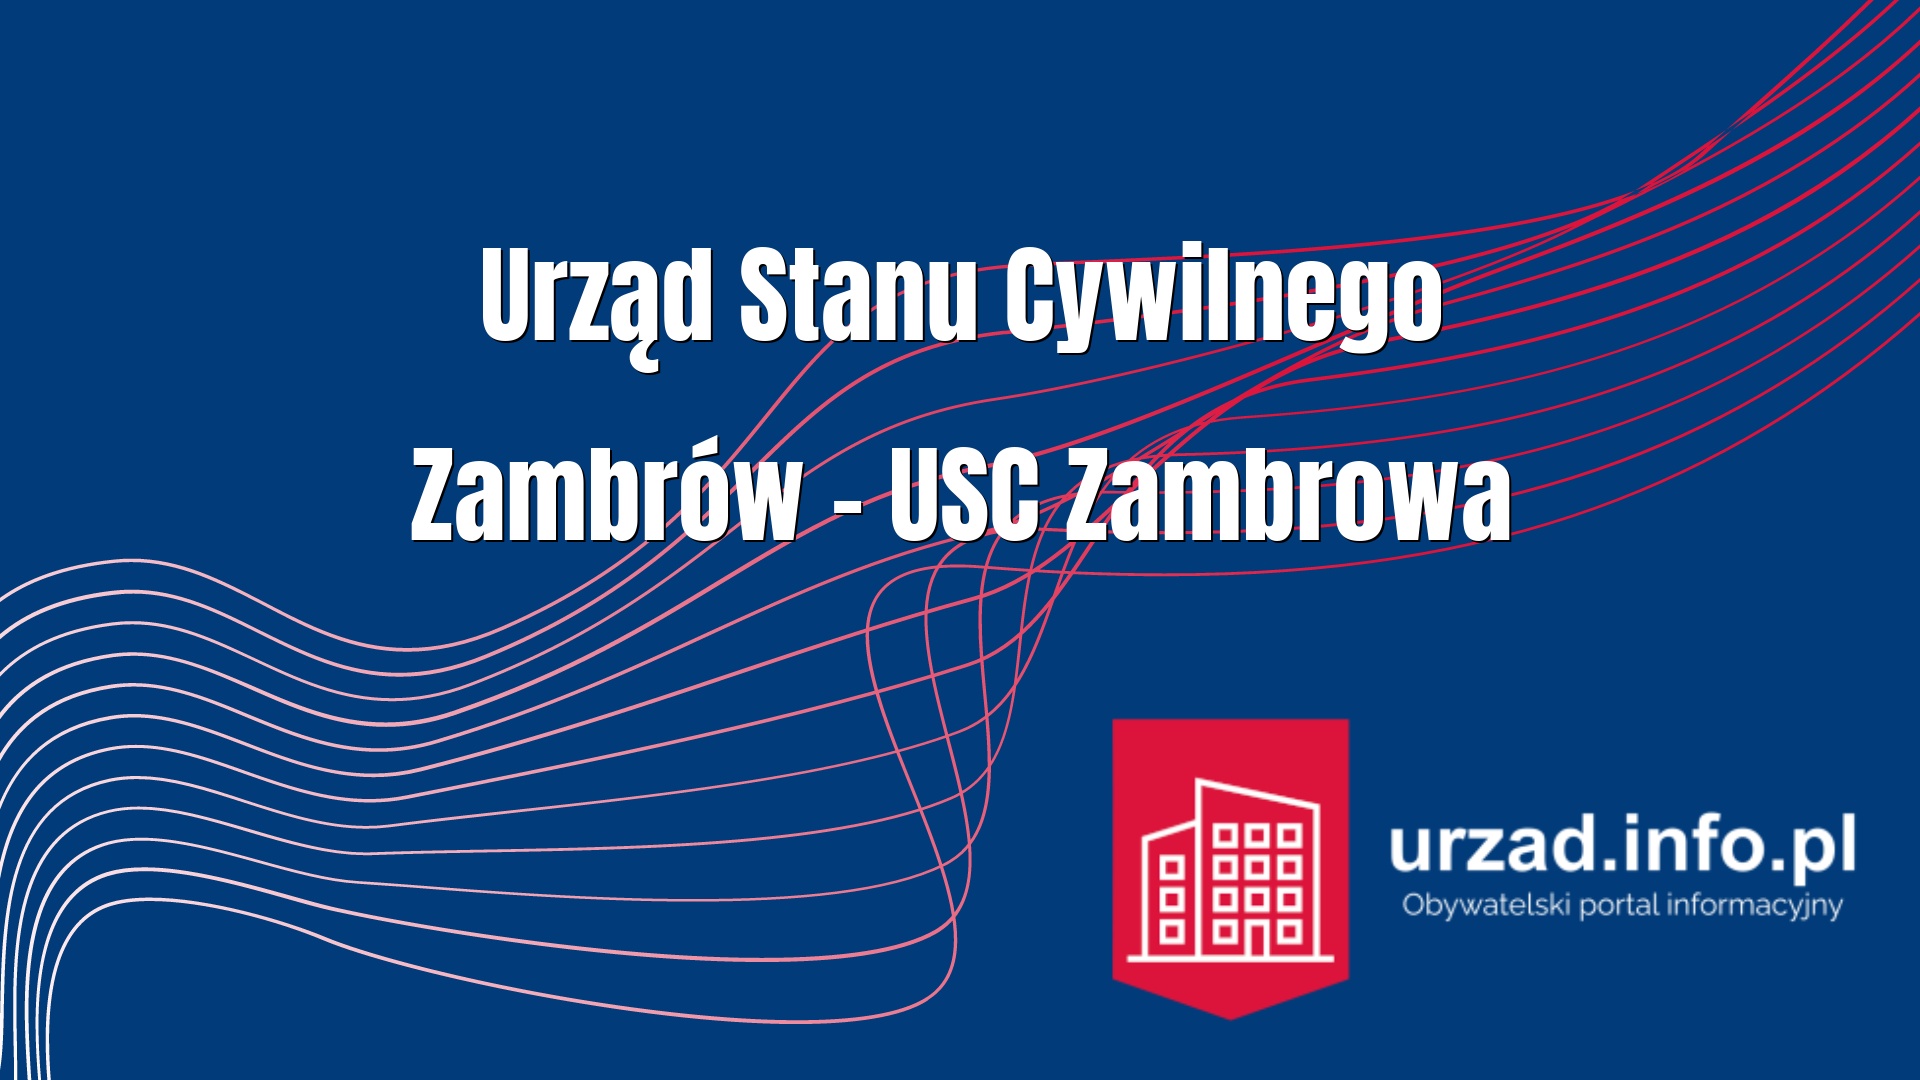 Urząd Stanu Cywilnego Zambrów – USC Zambrowa